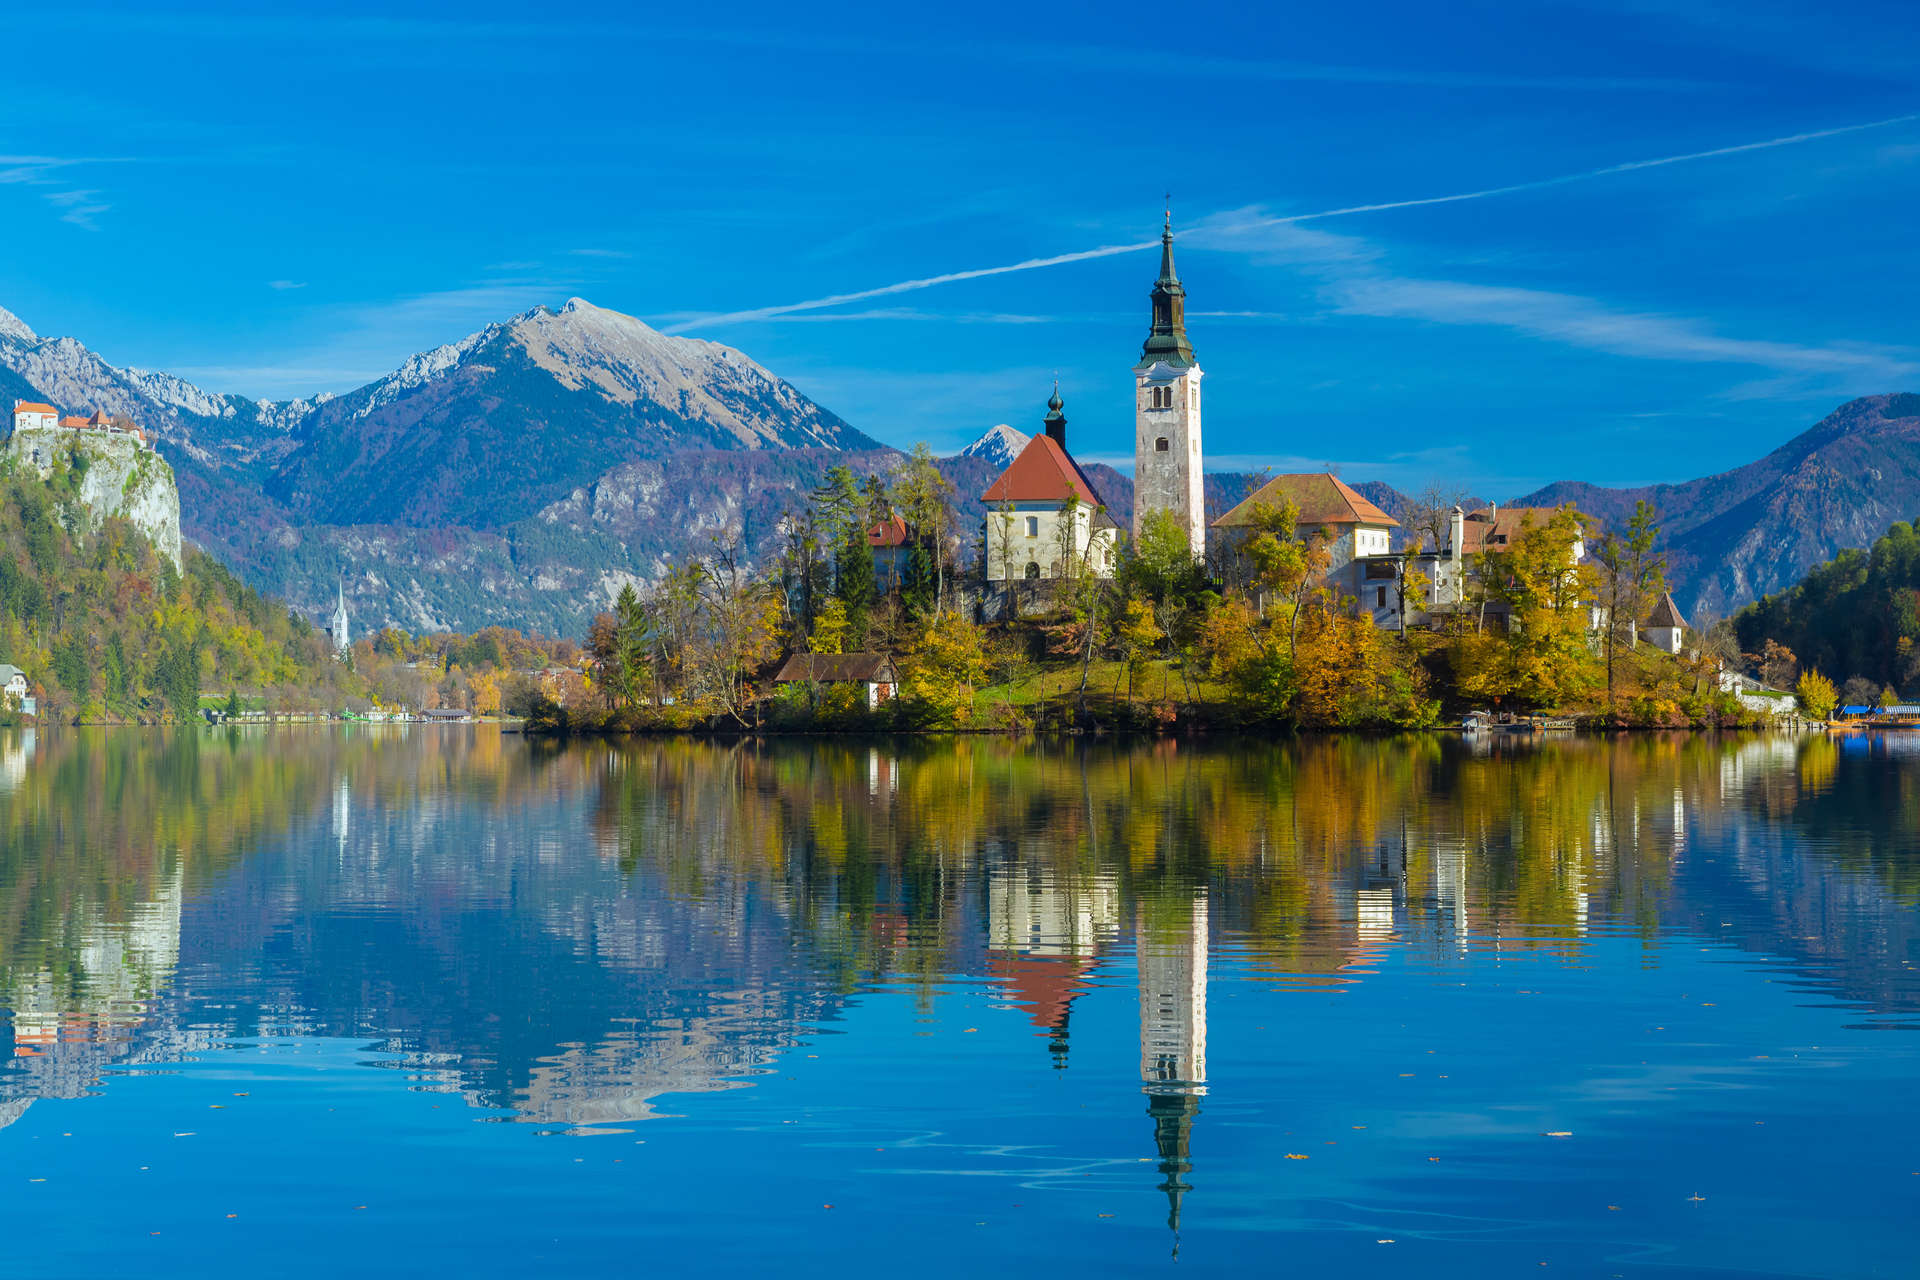 الجزيرة التي يعلو تلها كنيسة وسط بحيرة بليد الخلابة في سلوفينيا